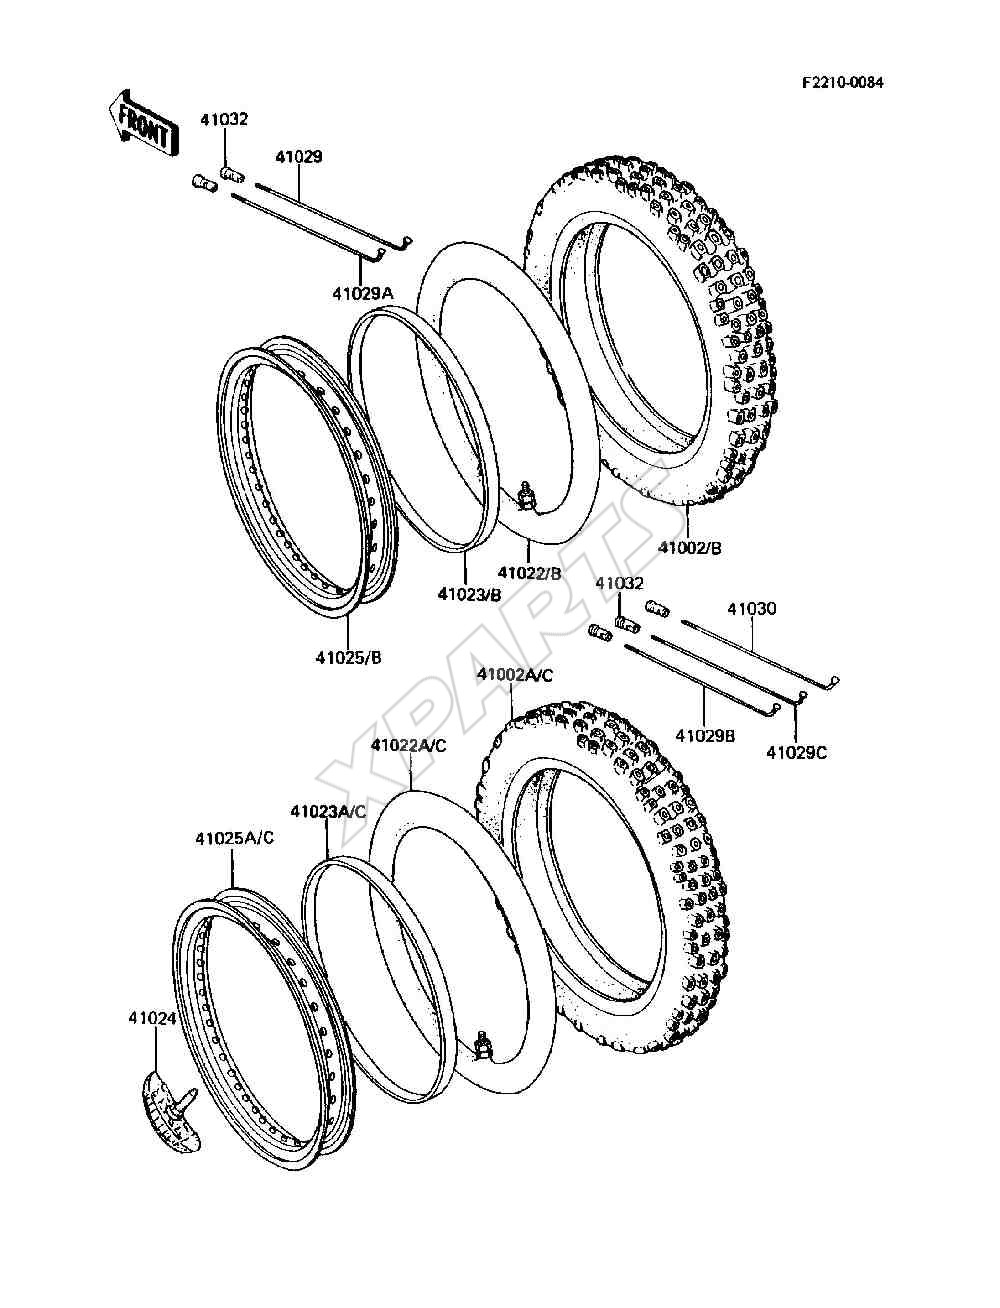 Bild für Kategorie Wheels / Tires